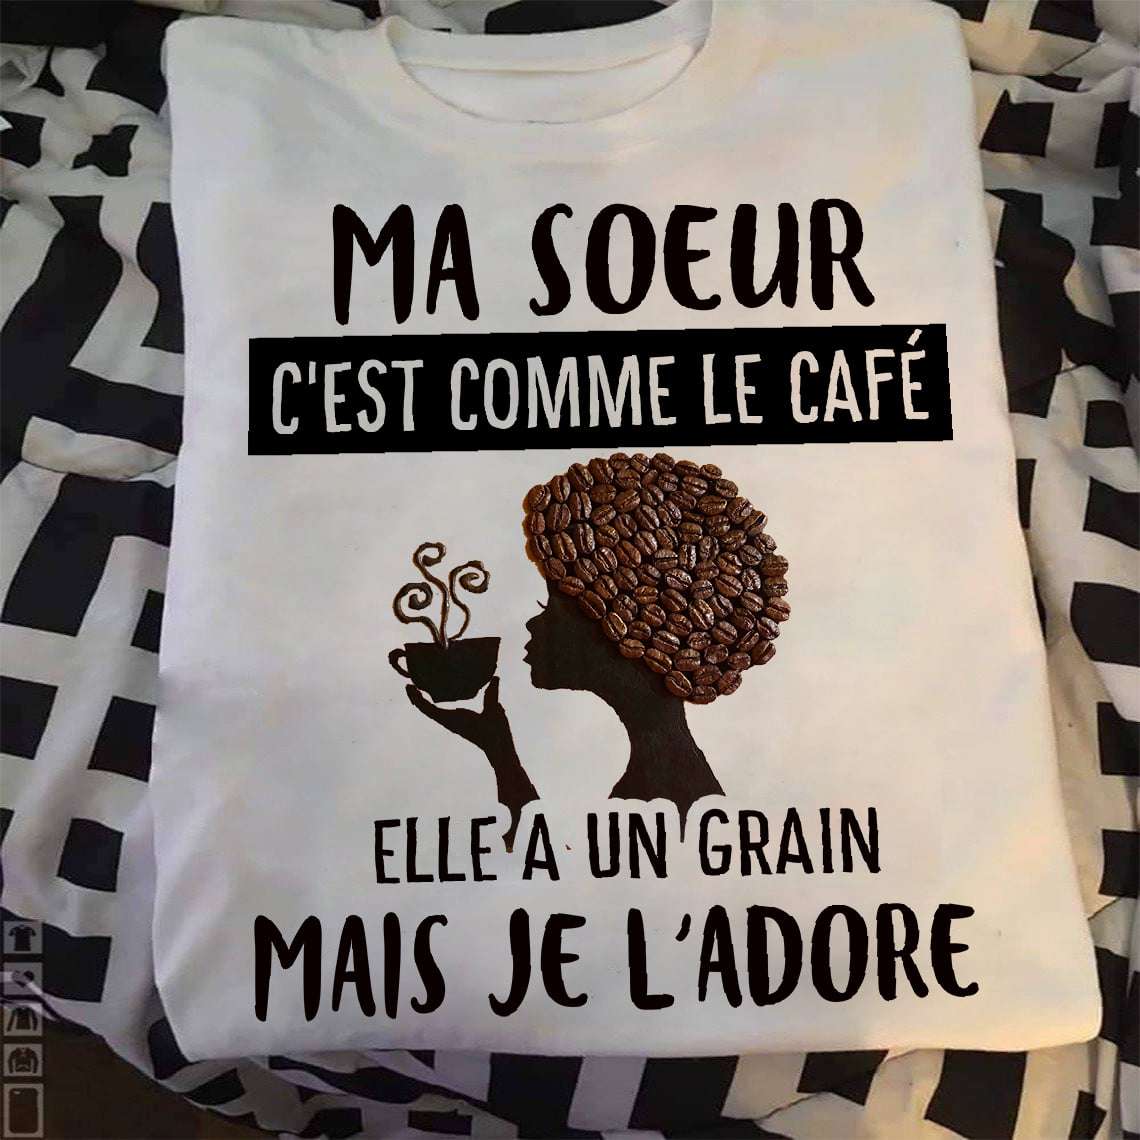 Ma soeur c'est comme le cafe elle a un graine mais je l'adore - Woman loves coffee, coffee woman graphic T-shirt